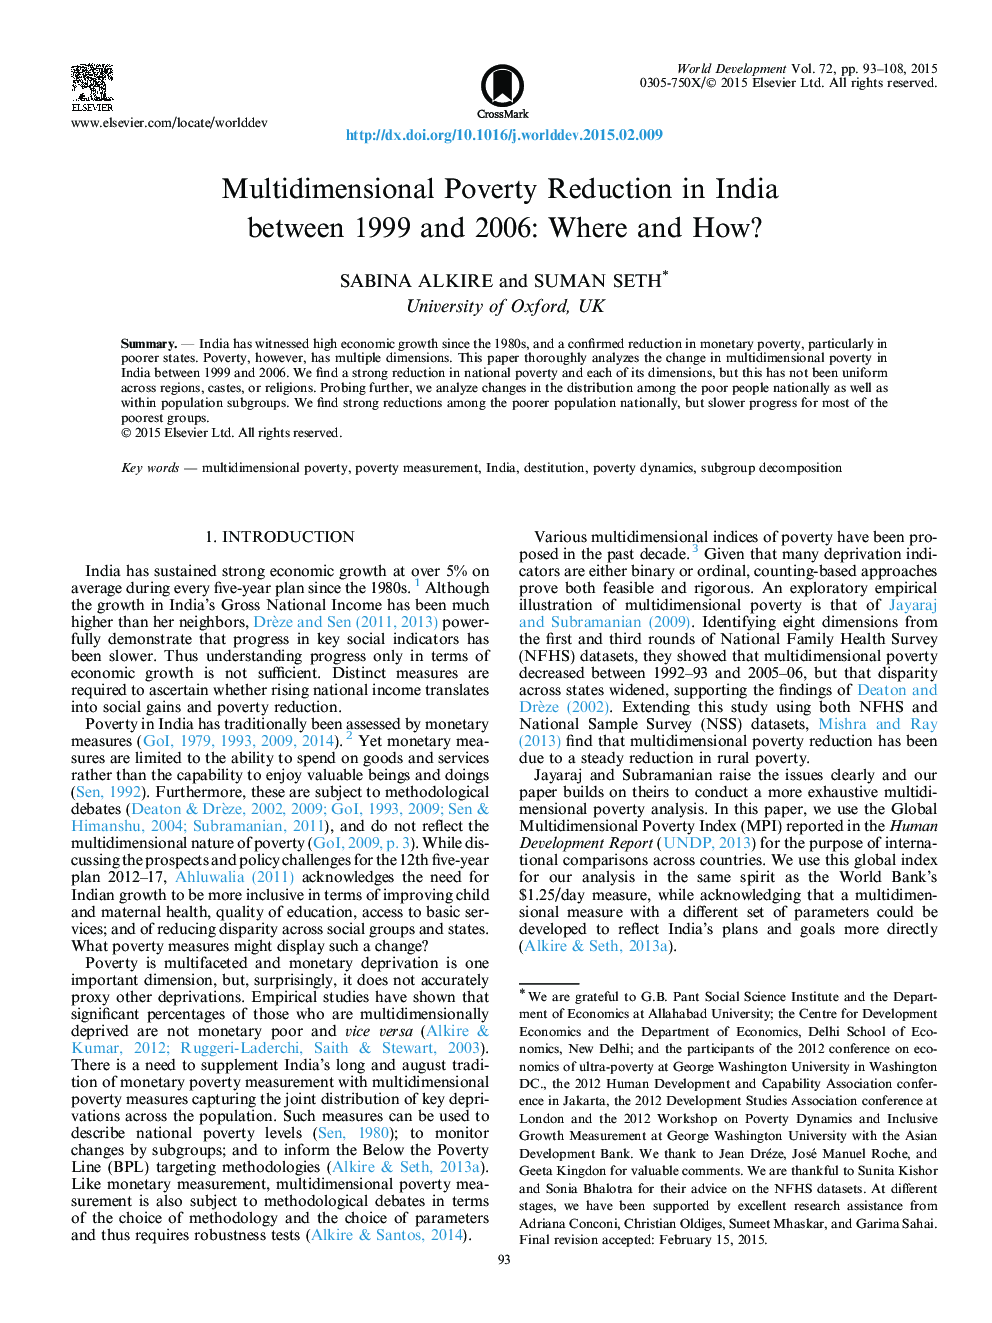 کاهش فقر چندجانبه در هند بین سالهای 1999 و 2006: کجا و چگونه؟ 